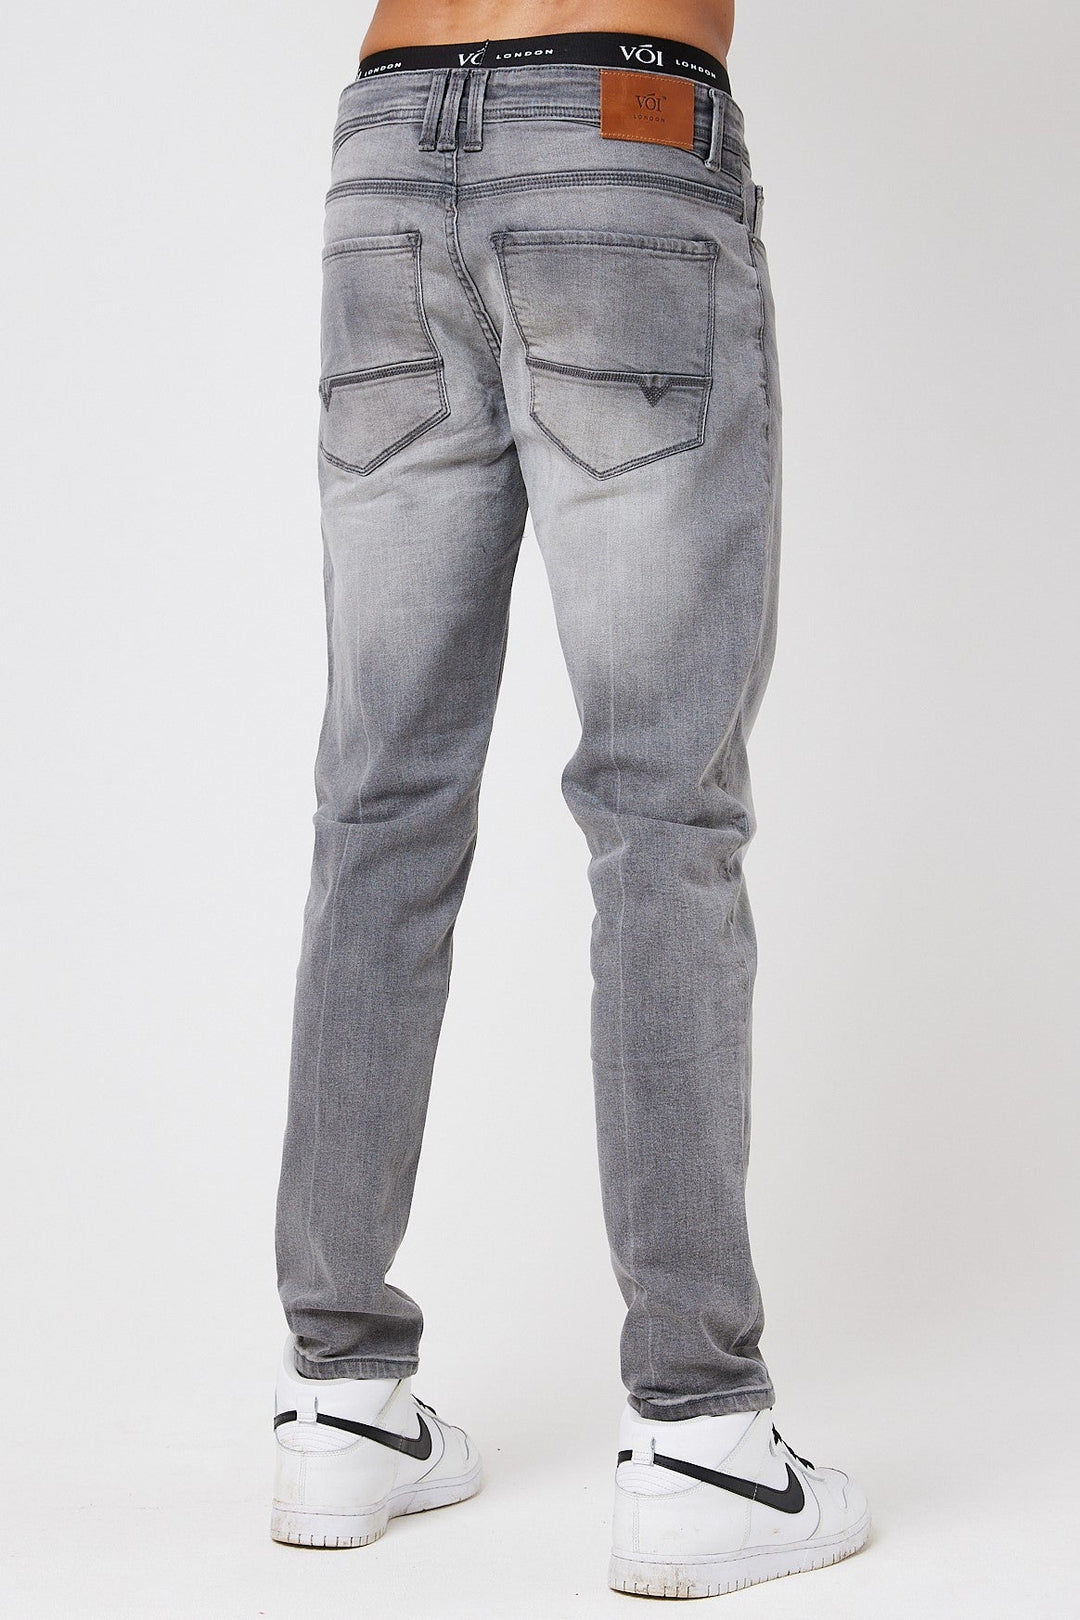 Richmond Skinny Jeans - Grey